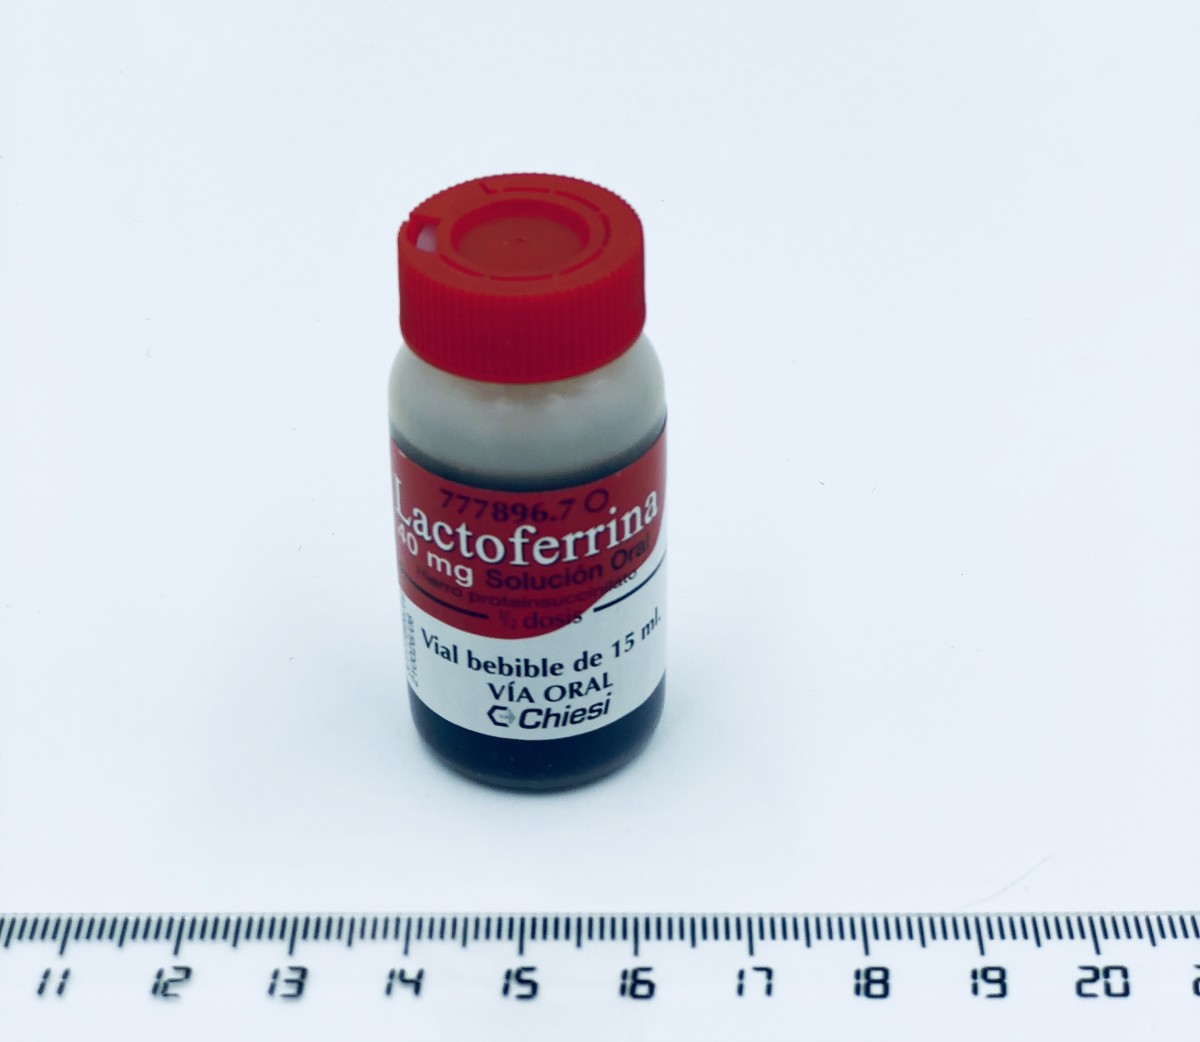 LACTOFERRINA 40 MG SOLUCIÓN ORAL , 20 viales bebibles de 15 ml fotografía de la forma farmacéutica.